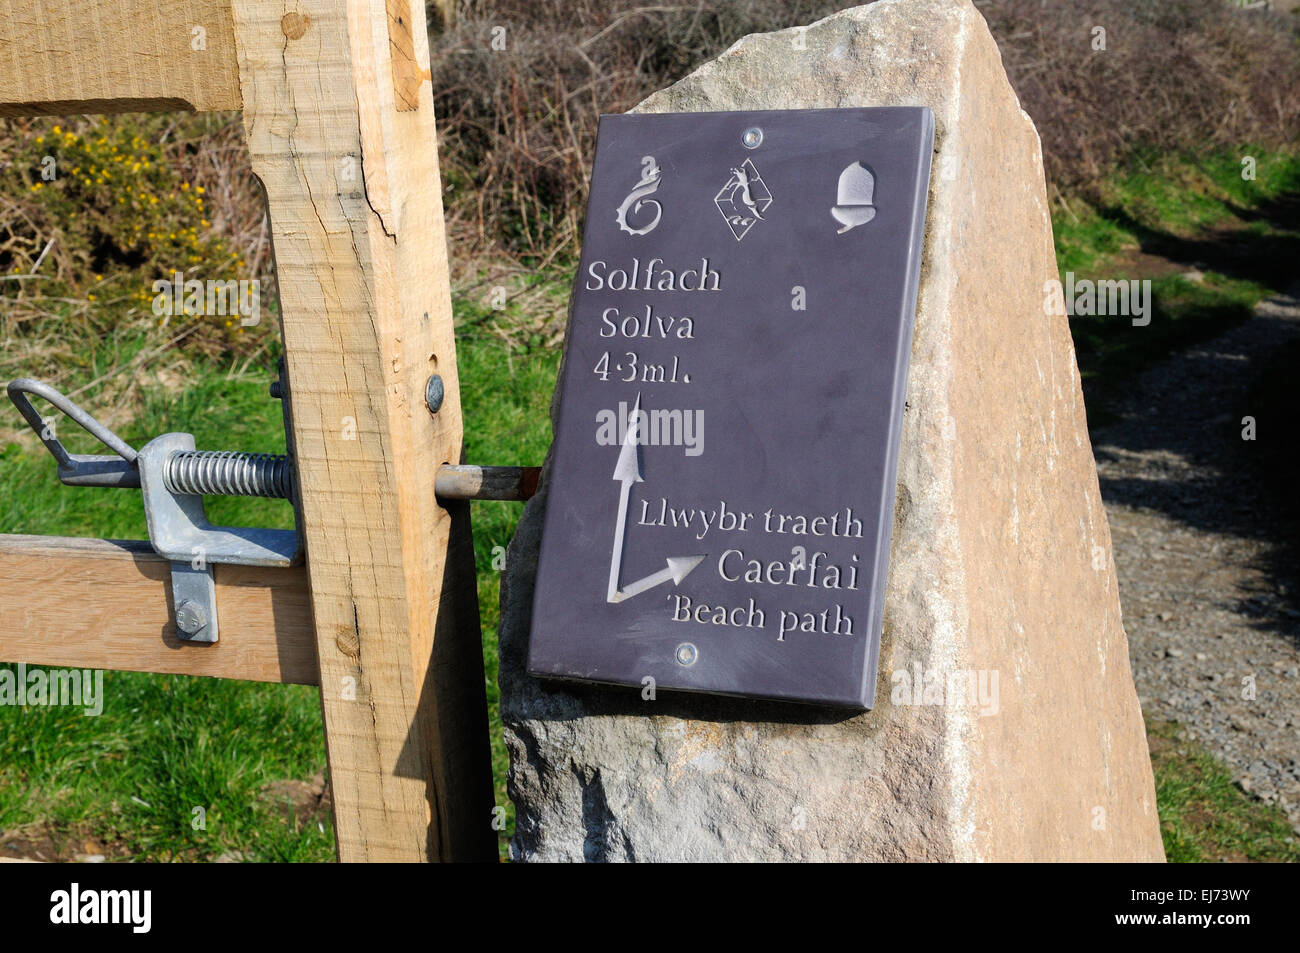 Schiefer Zweisprachiges Schild an einem Stein Caerfaii gatepost Strand Weg zu Solva St Davids Pembrokeshire Wales Cymru GROSSBRITANNIEN GB Stockfoto